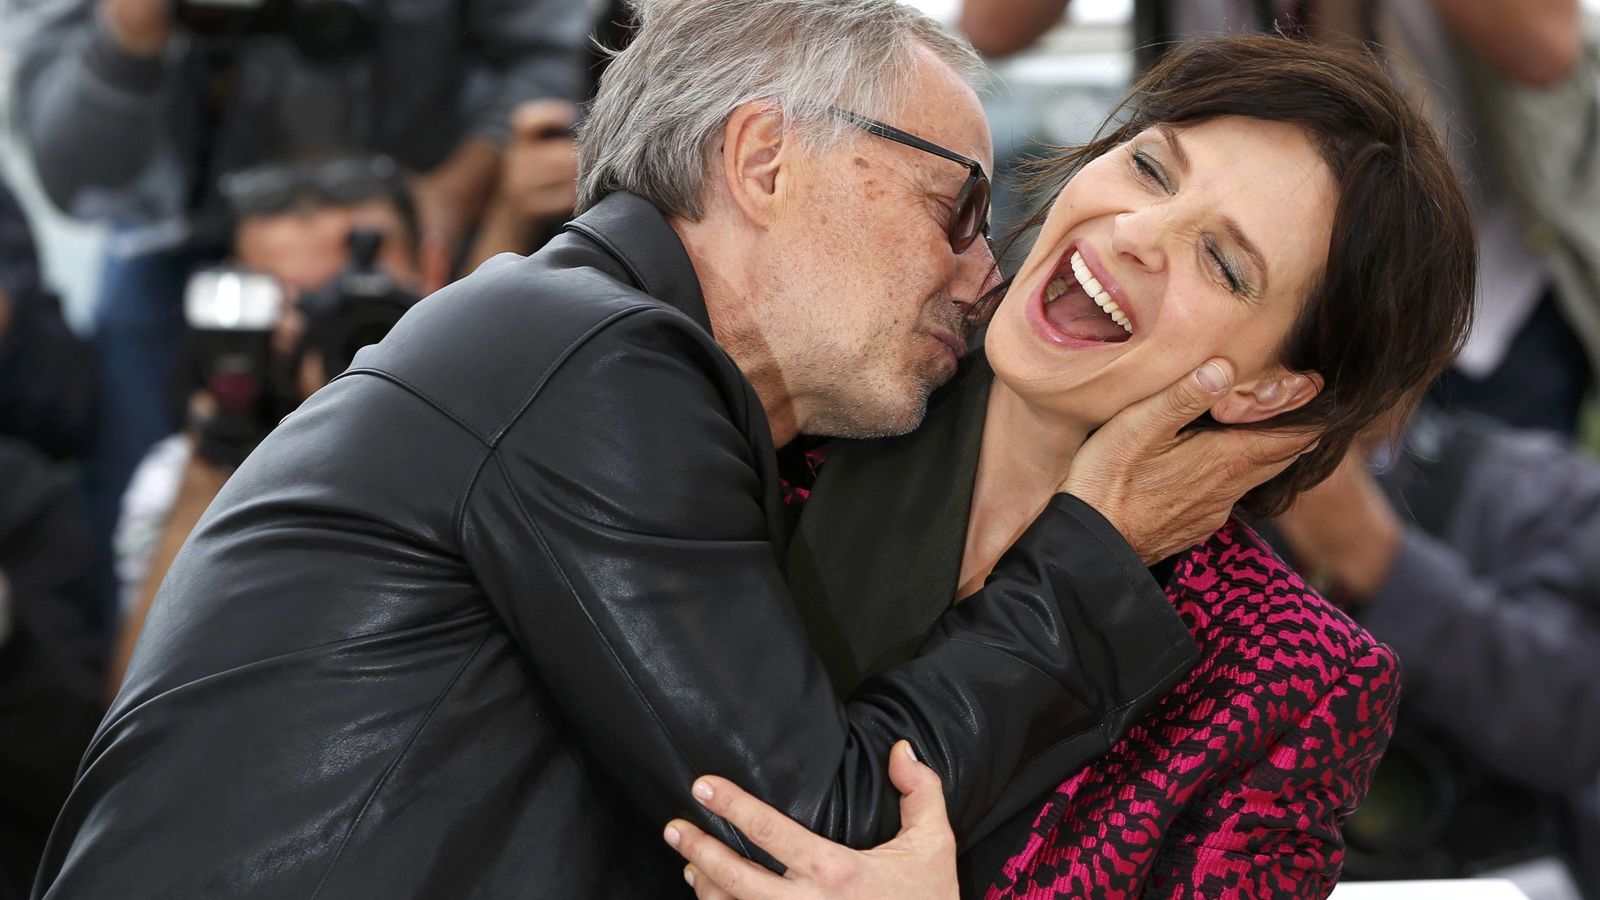 Foto: Fabrice Luchini y Juliette Binoche en el photocall de Cannes (REUTERS)